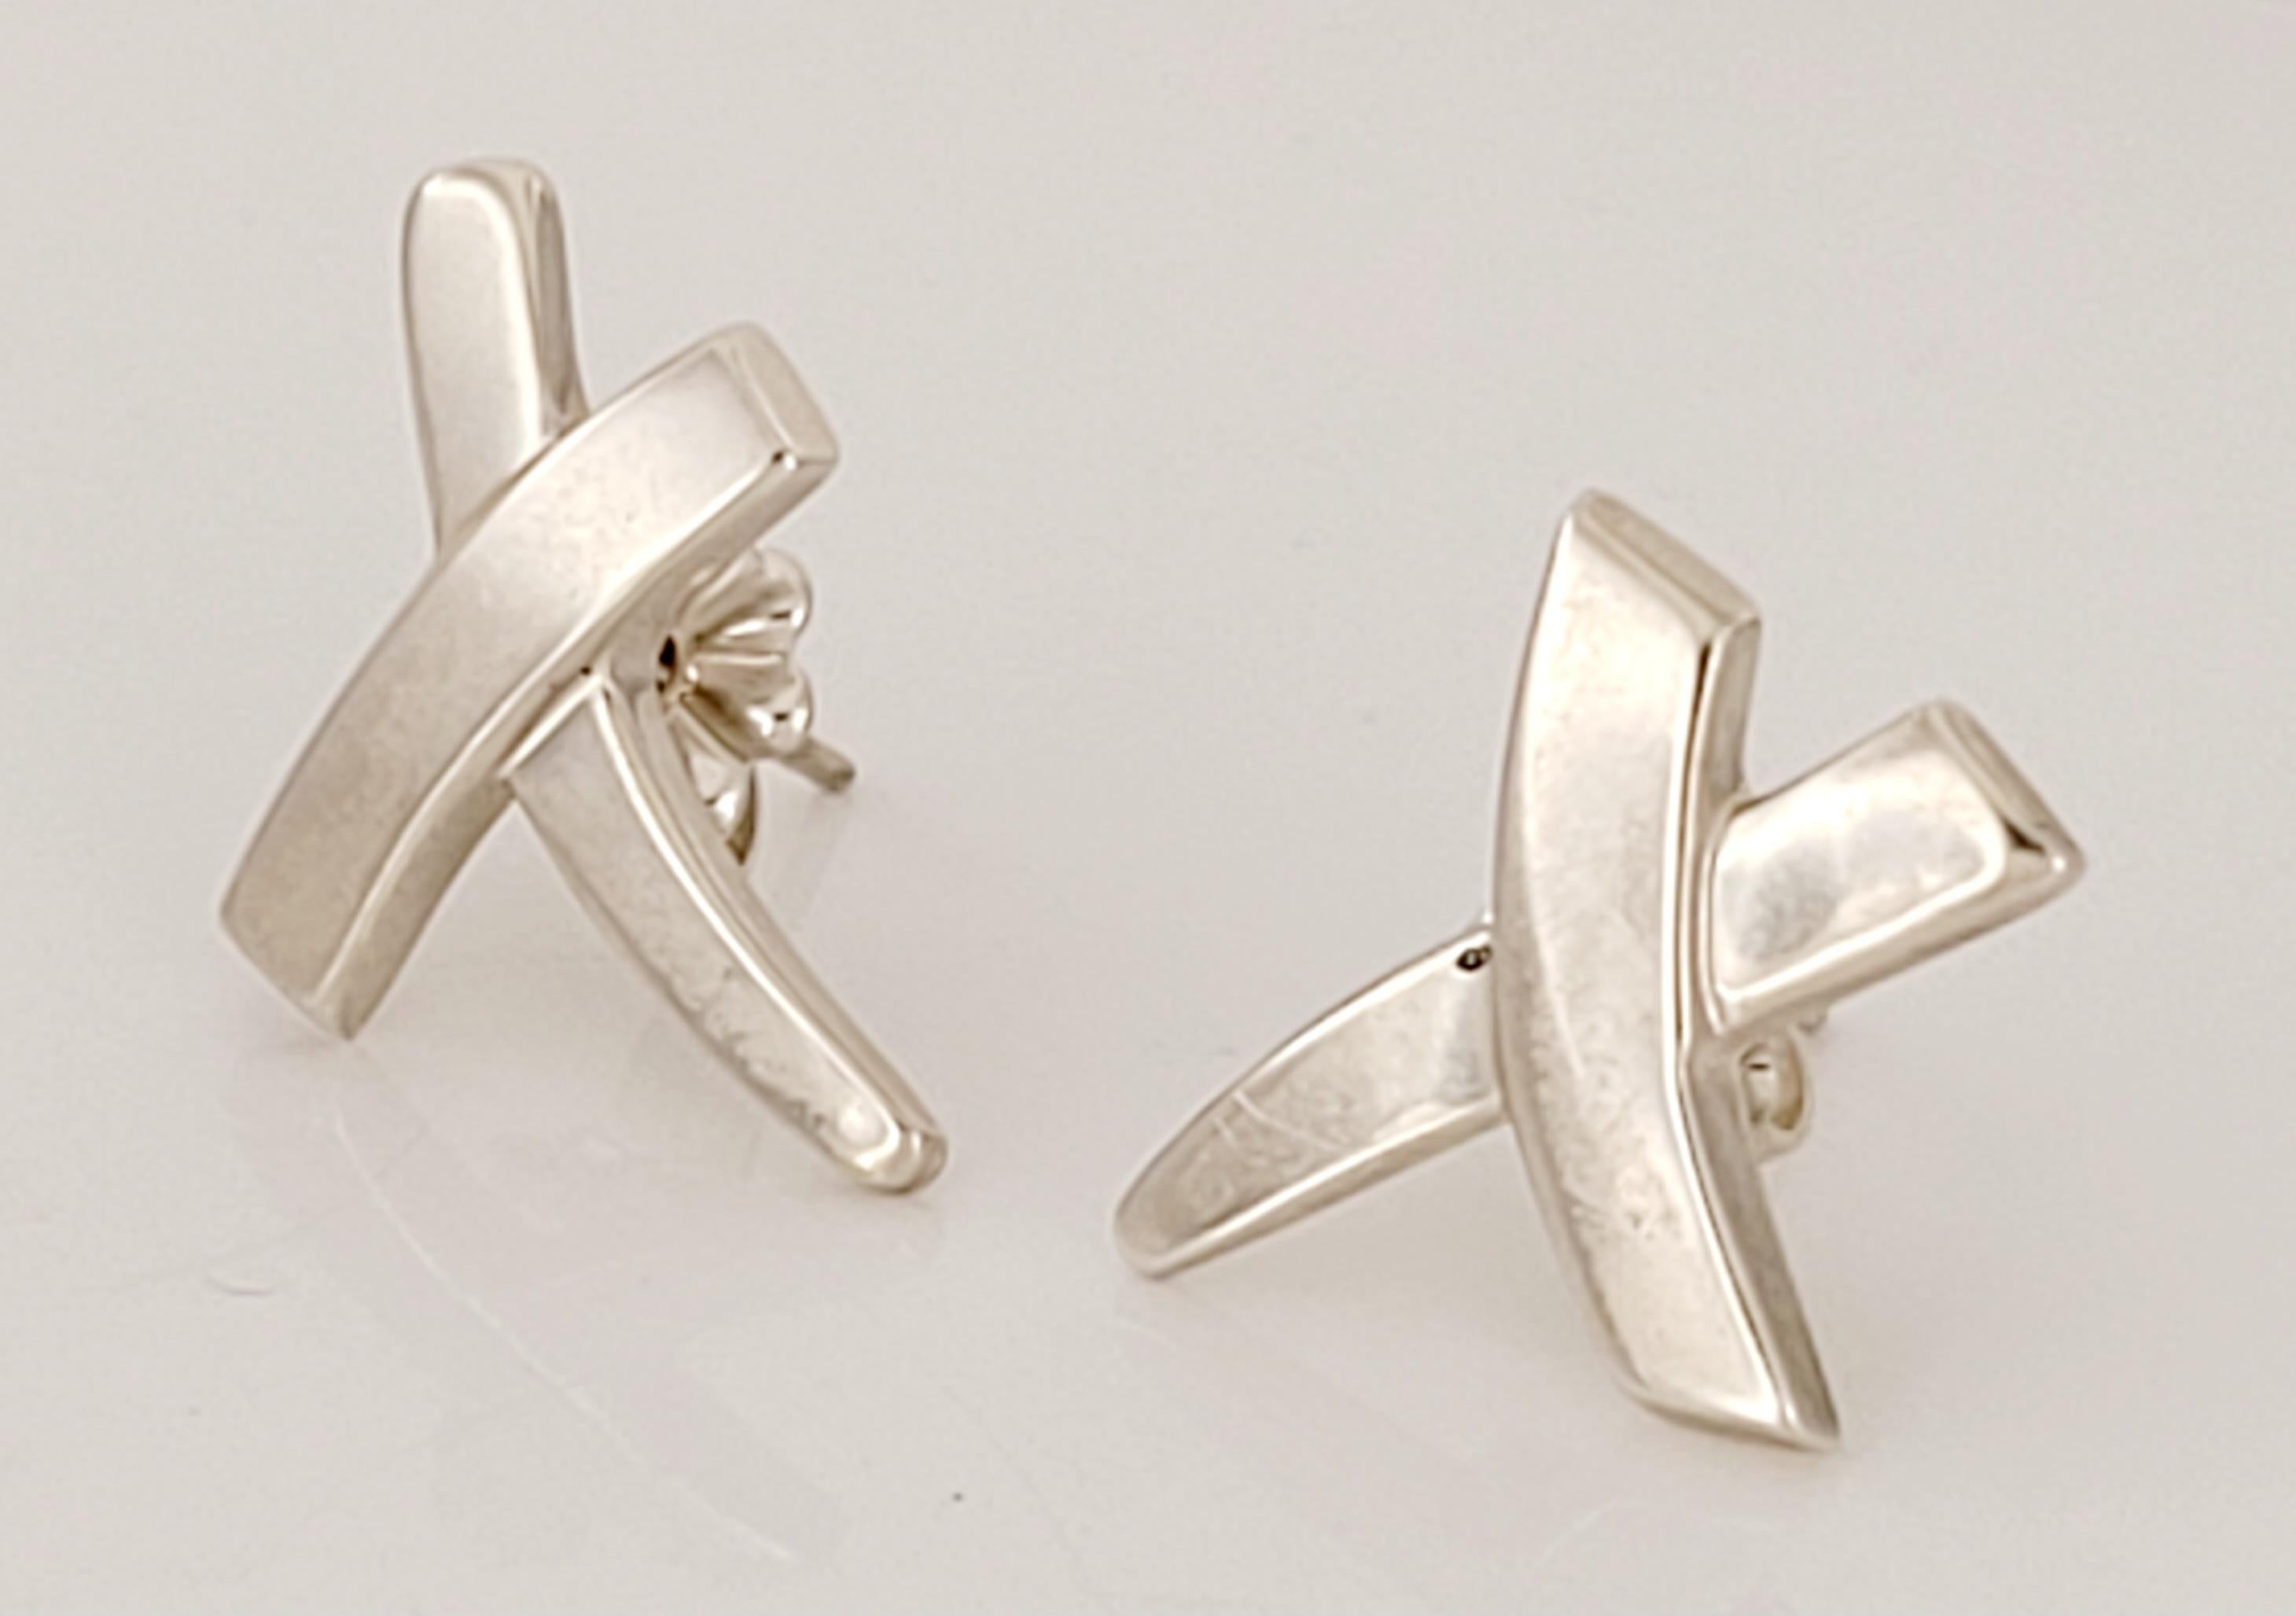 Tiffany& Co Kuss-Kreuz-Ohrring
MATERIAL Sterling Silber 
Reinheit des Metalls 925
Gewicht 2,7 gr insgesamt
Zustand Neu, ohne Etikett
Kommt mit Tiffany& Co Etui